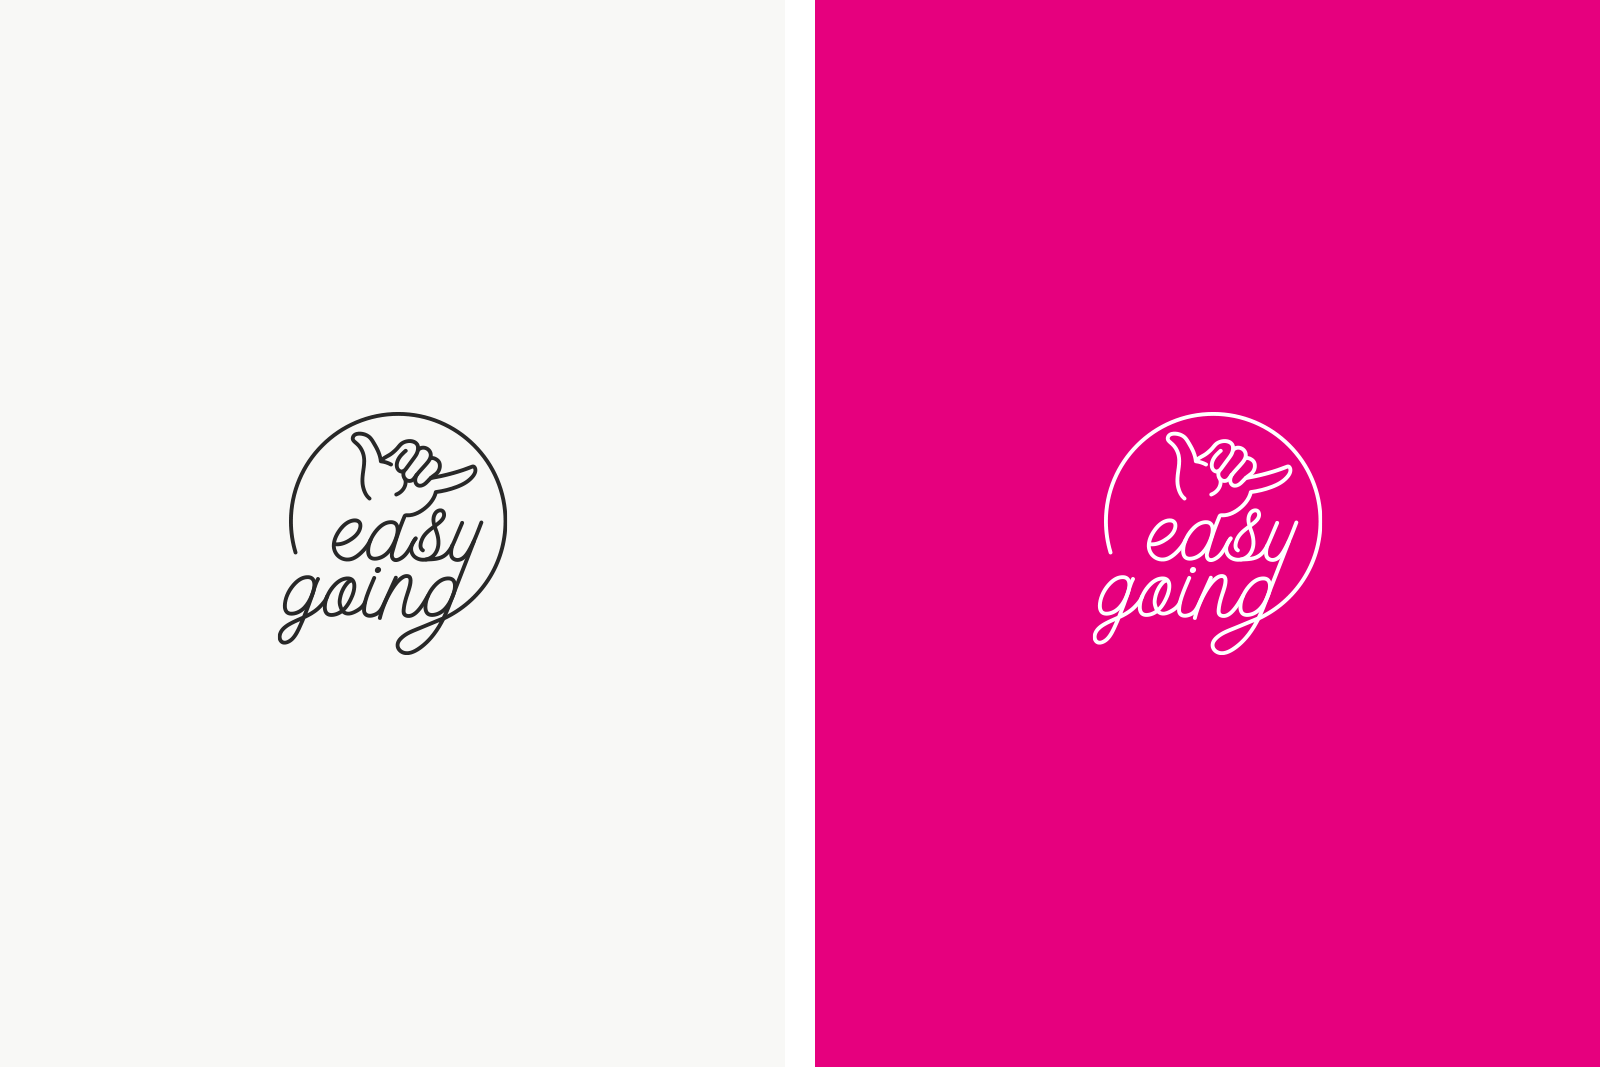 logo_easygoing